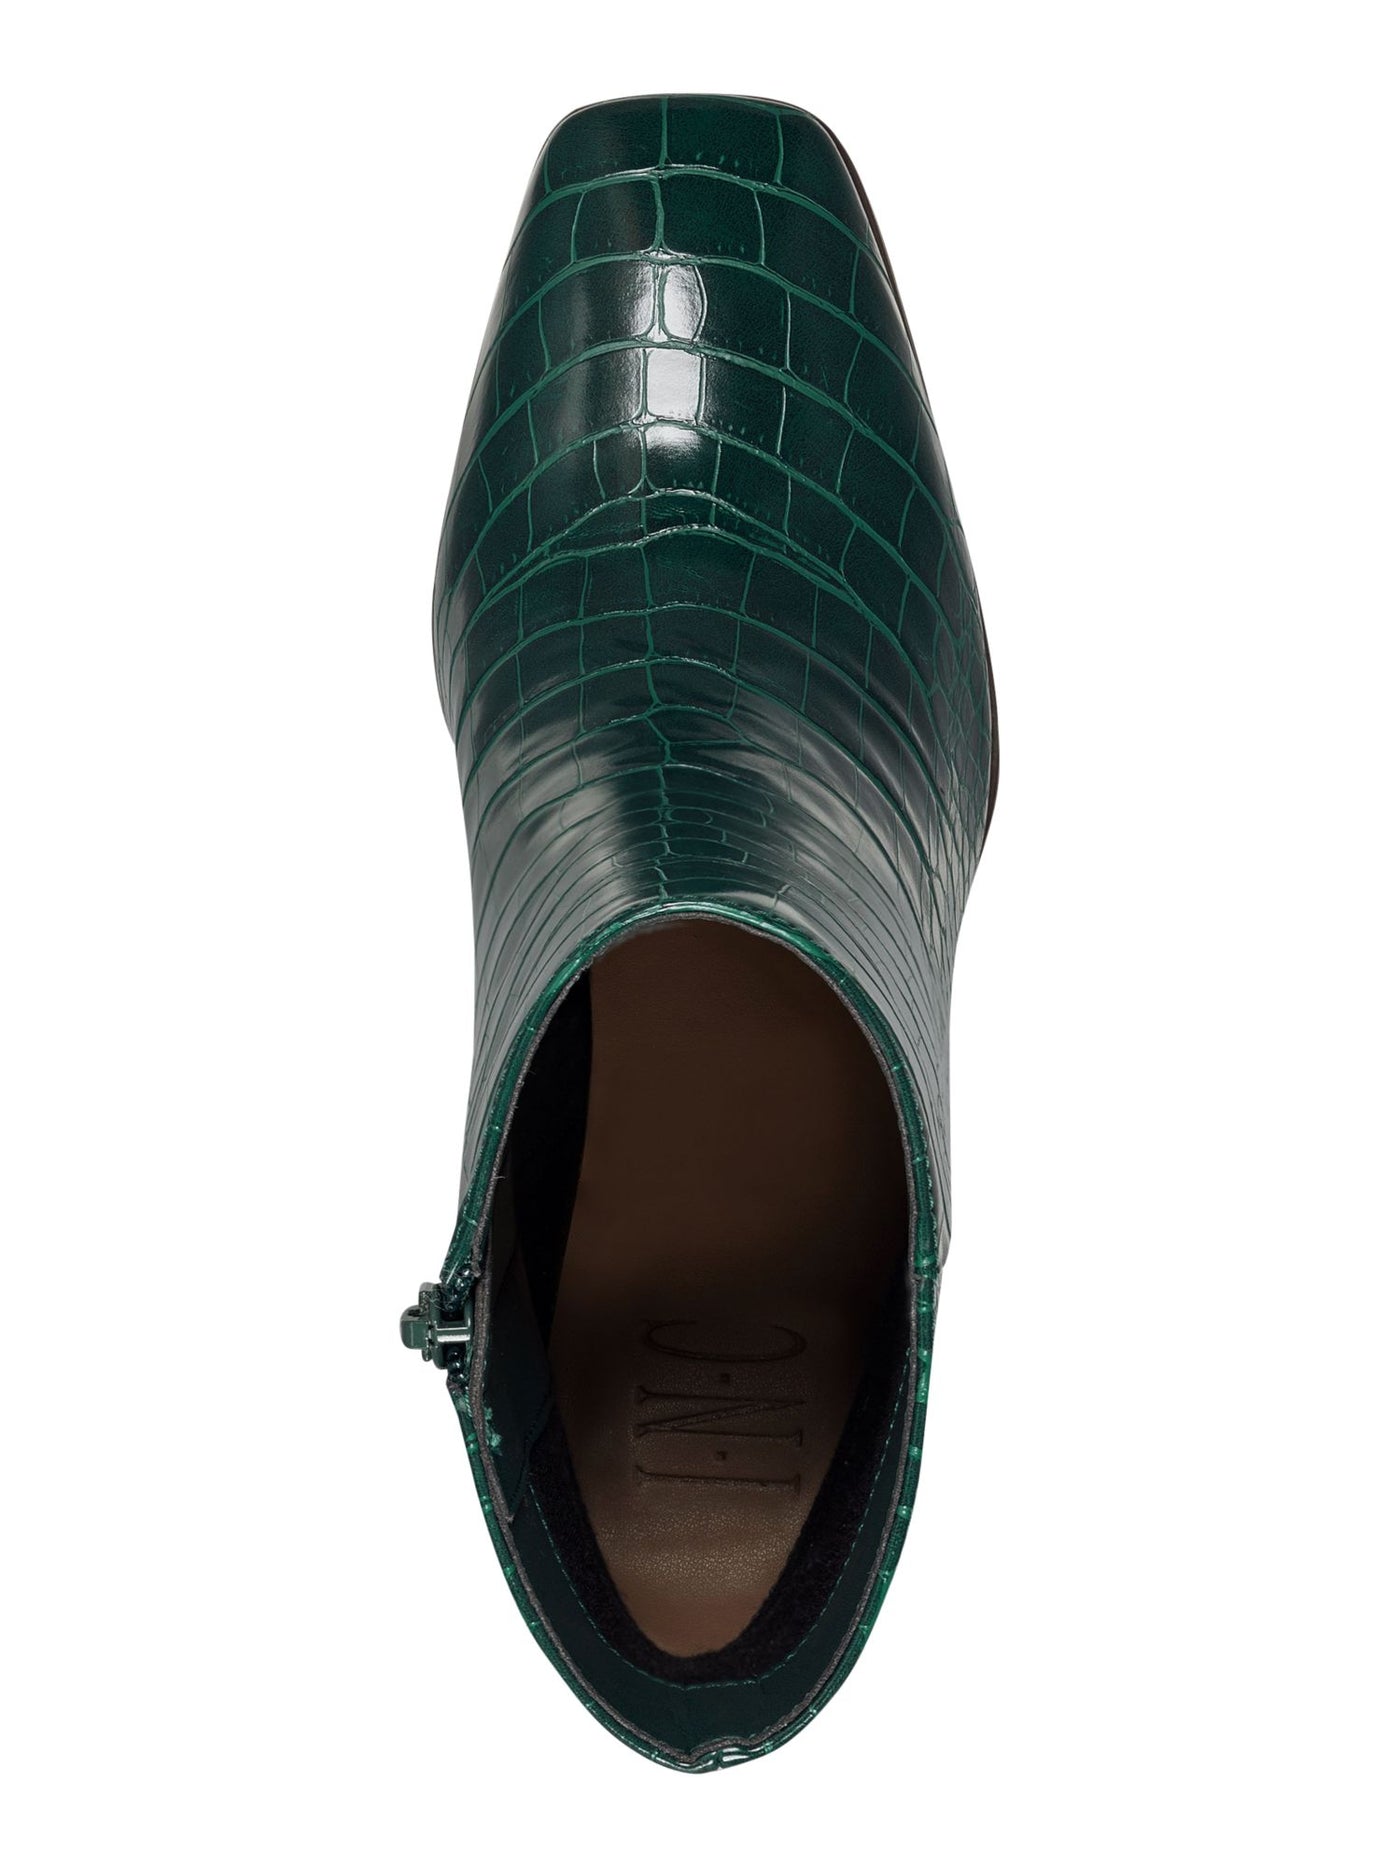 INC Womens Green Crocodile Comfort Slip Resistant Dasha Square Toe Block Heel Zip-Up Booties 5 M